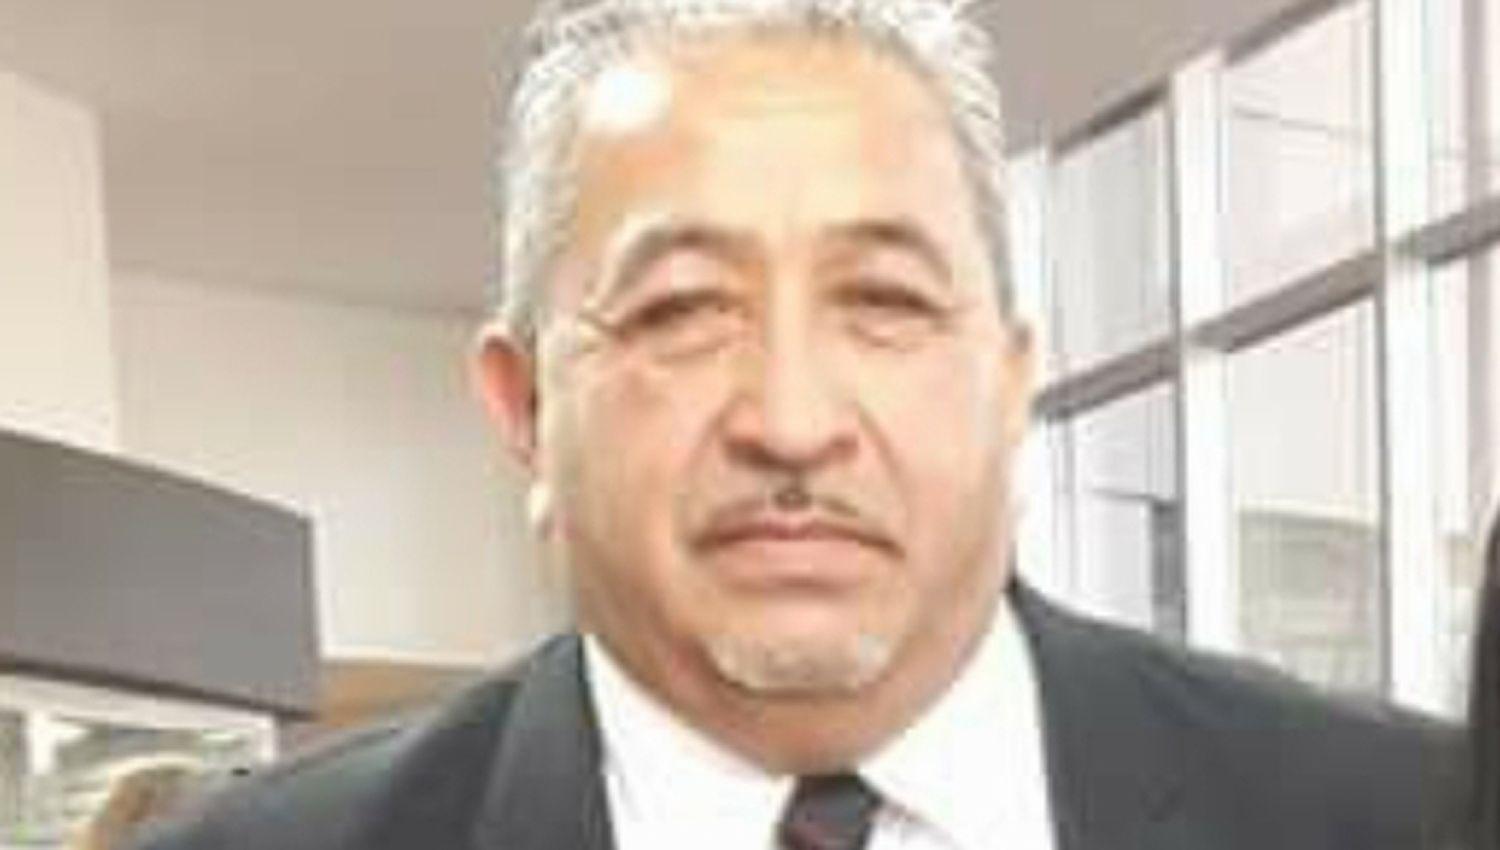 Santiaguentildeo excombatiente de Malvinas fue designado en la Comisioacuten Nacional